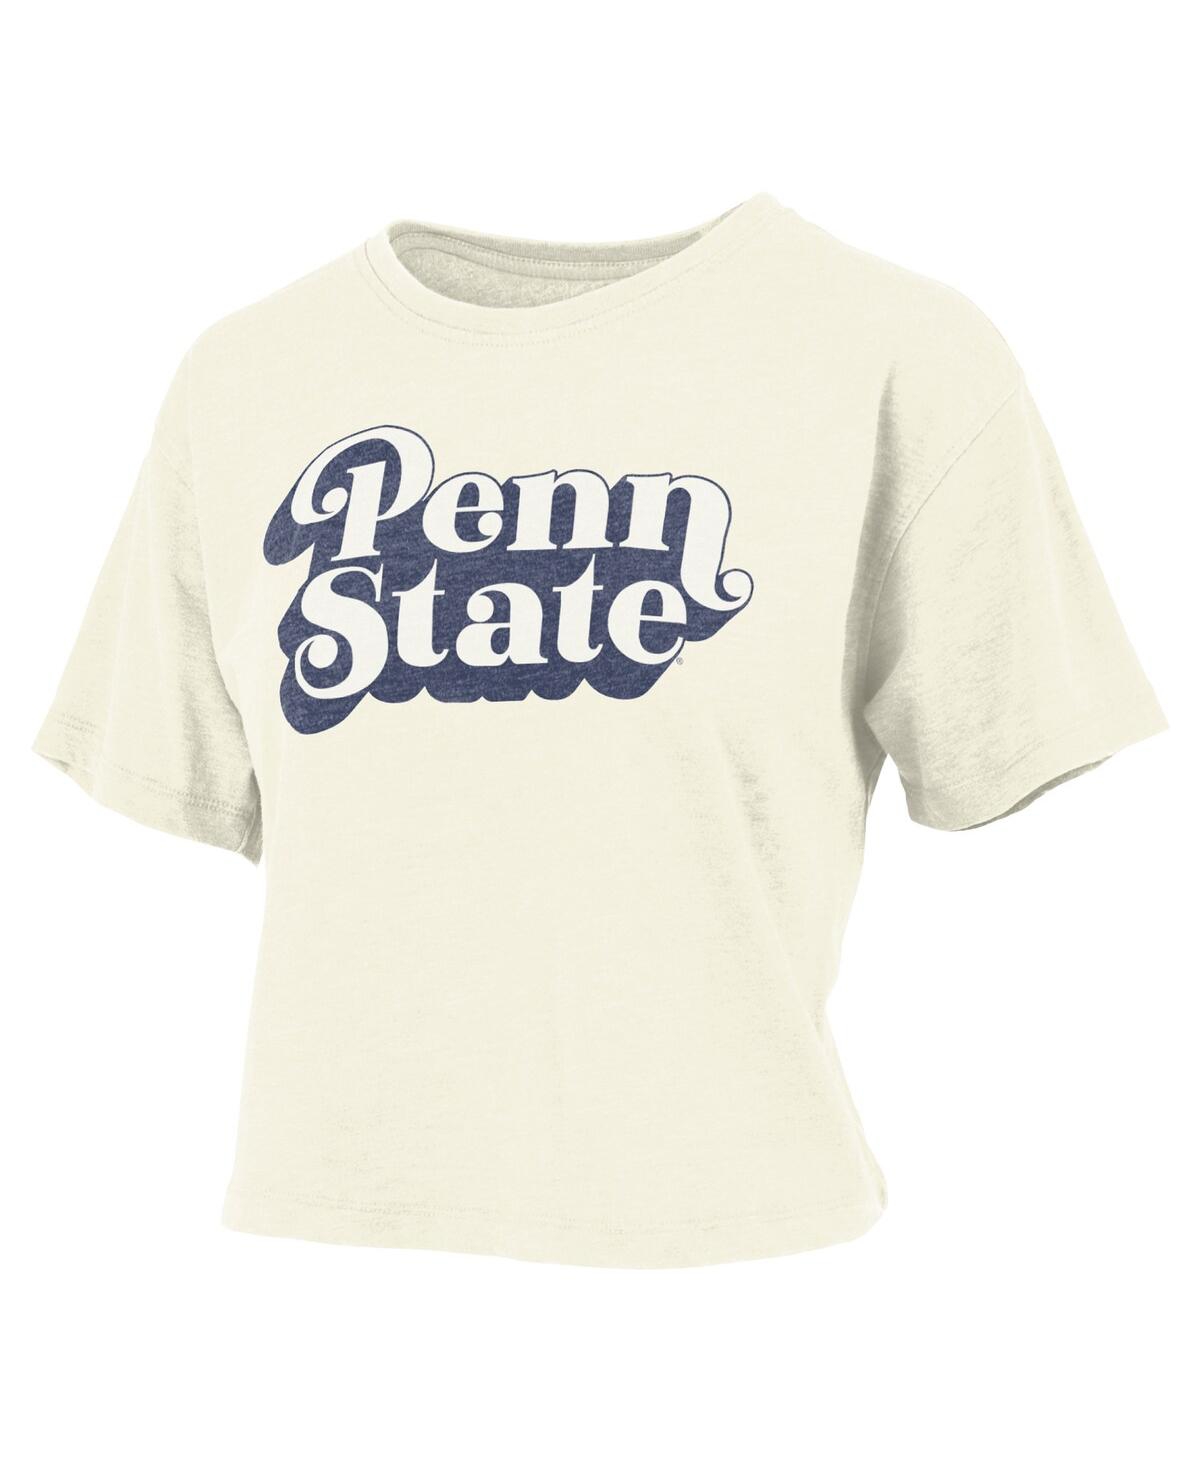 Shop Pressbox Women's  White Penn State Nittany Lions Vintage-like Easy Team Name Waist-length T-shirt